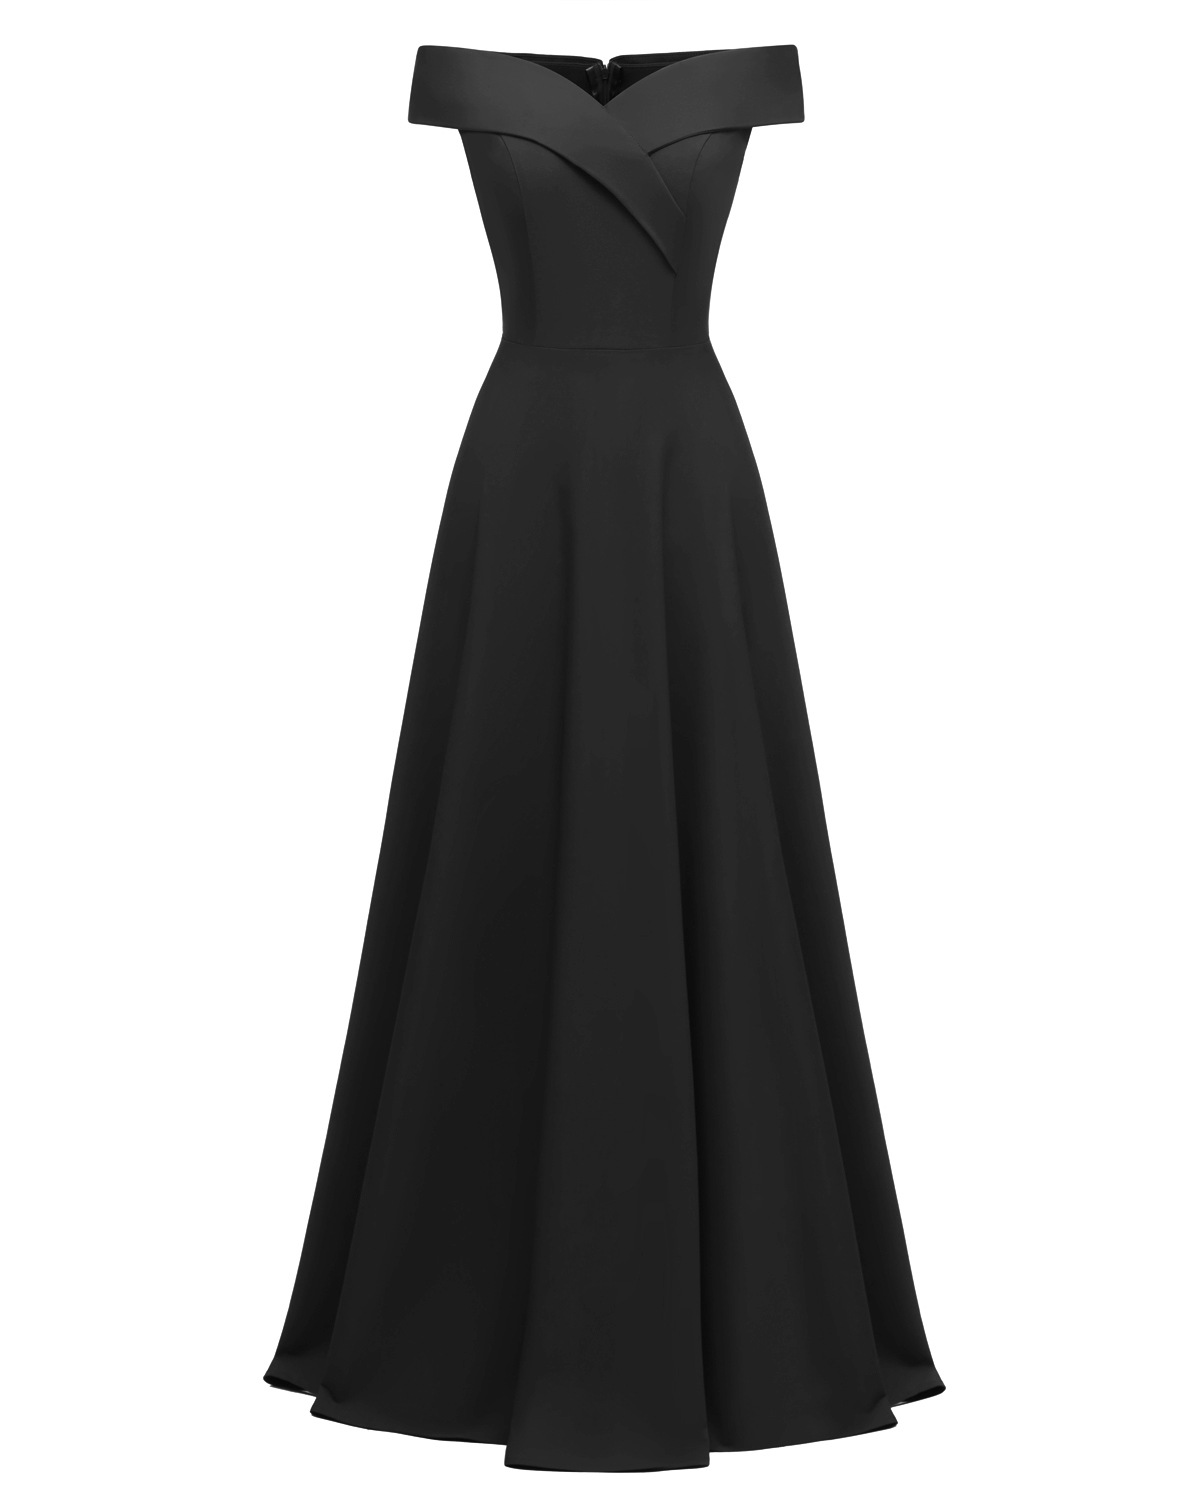 Sexy Black Strech Long Prom Dress A Line Women Evening Dress , Simple Evening Gowns ，long Bridesmaid Dress